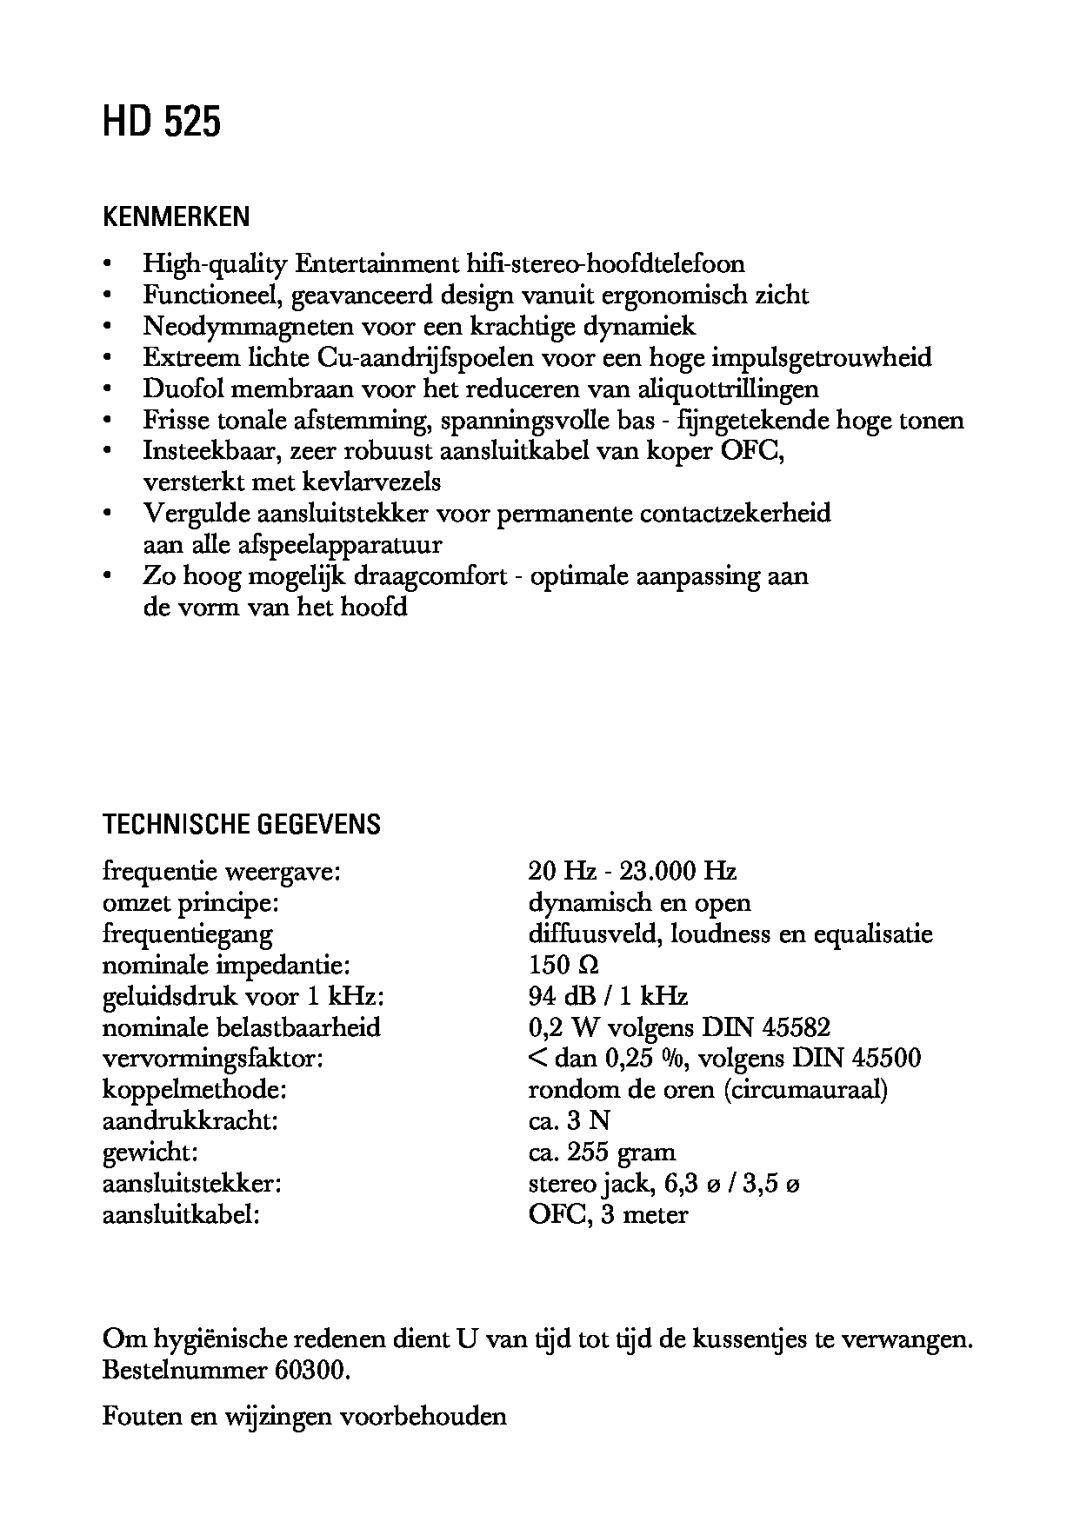 Sennheiser HD525 manual Kenmerken, Technische Gegevens 